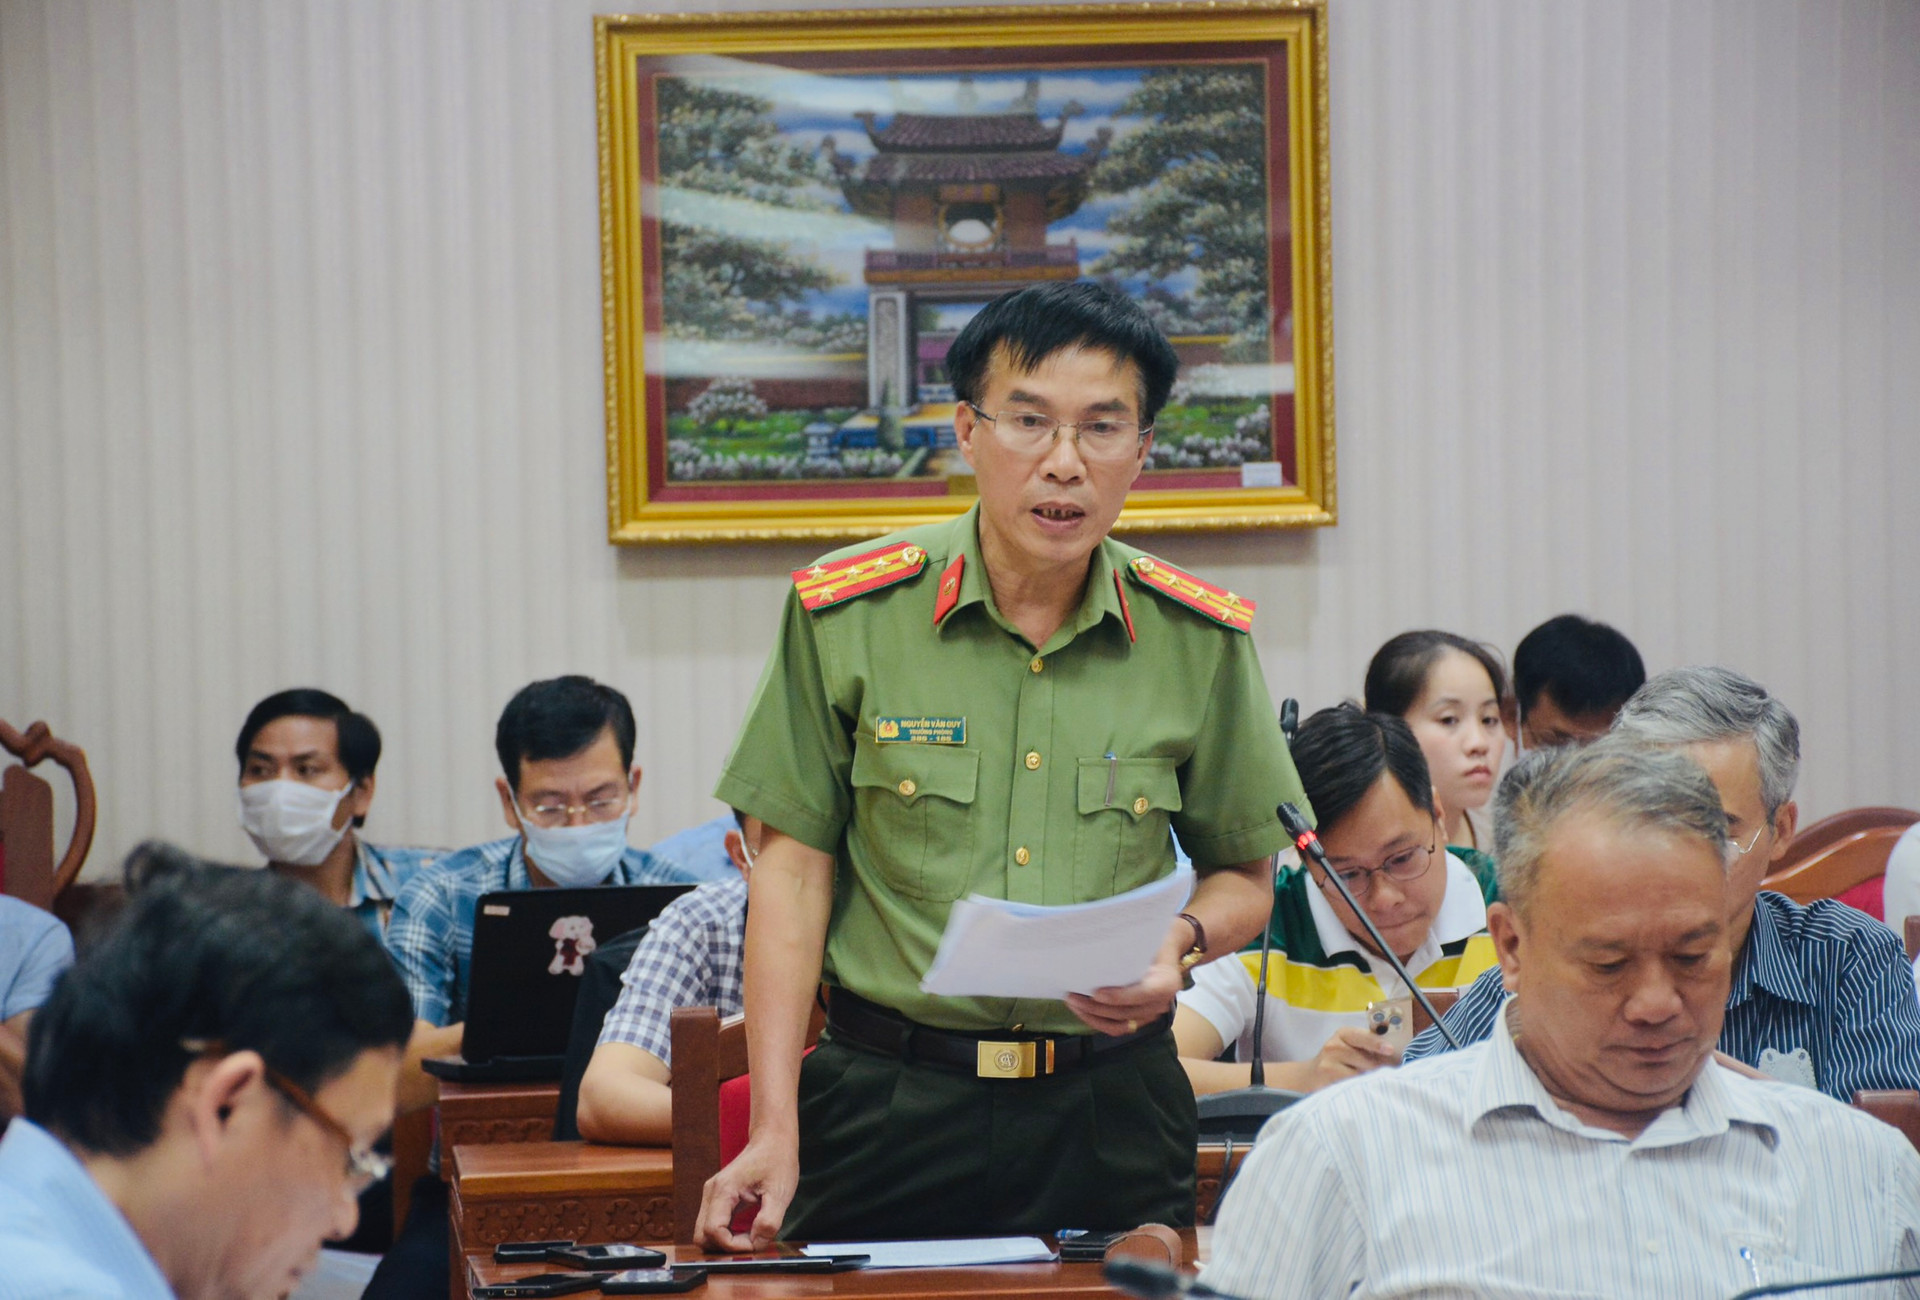 Đại tá Nguyễn Văn Quy, Trưởng Phòng Tham mưu, Công an tỉnh Đắk Lắk  thông tin với báo chí về vụ phá rừng.